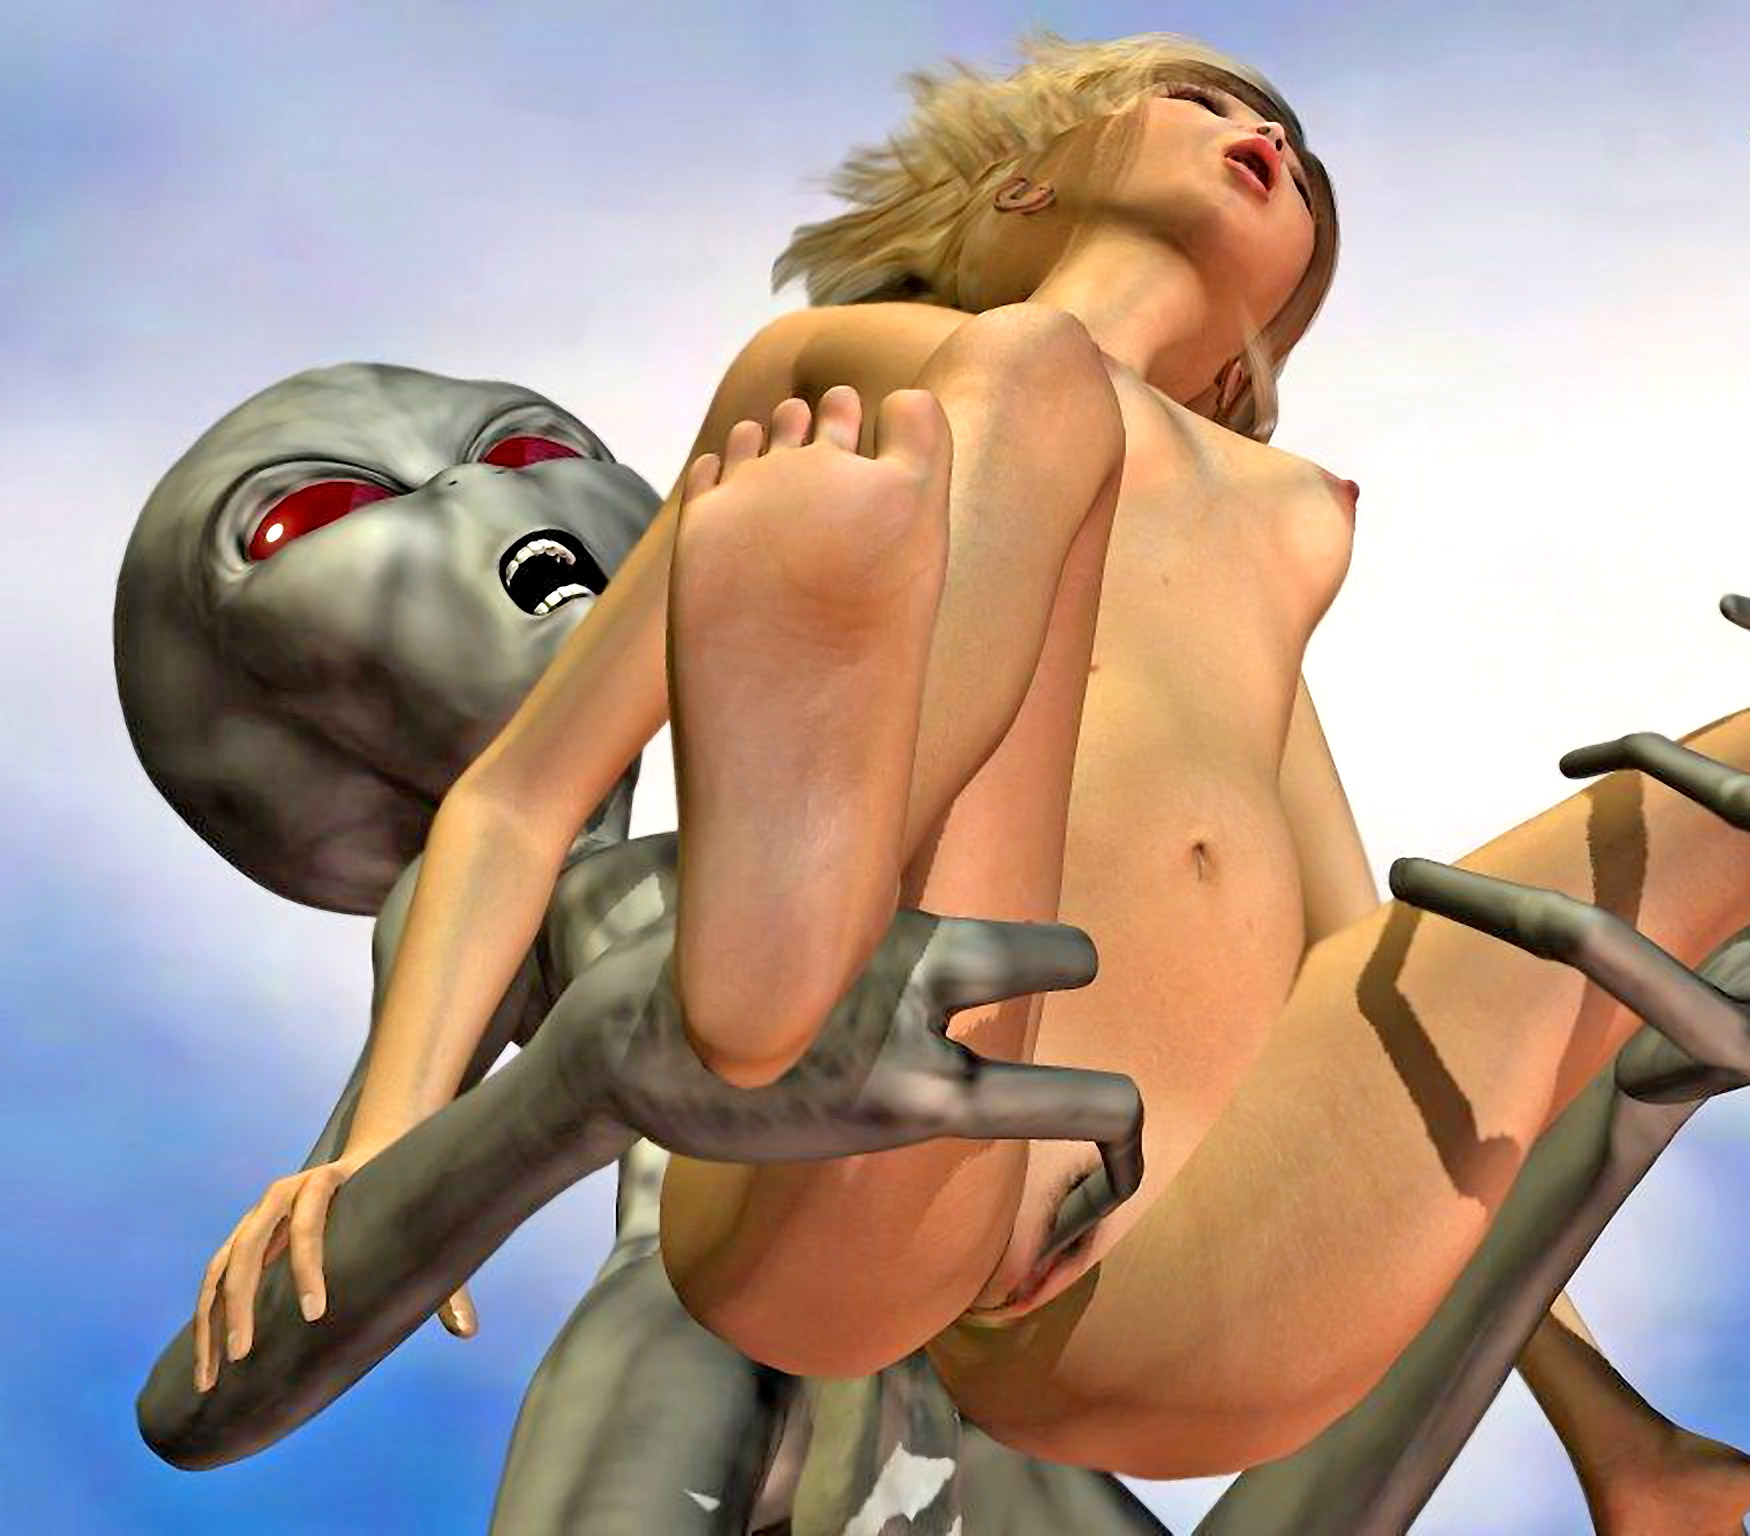 1750px x 1536px - monster sex cartoon with blonde chick enjoying with a robot |  3dwerewolfporn.com